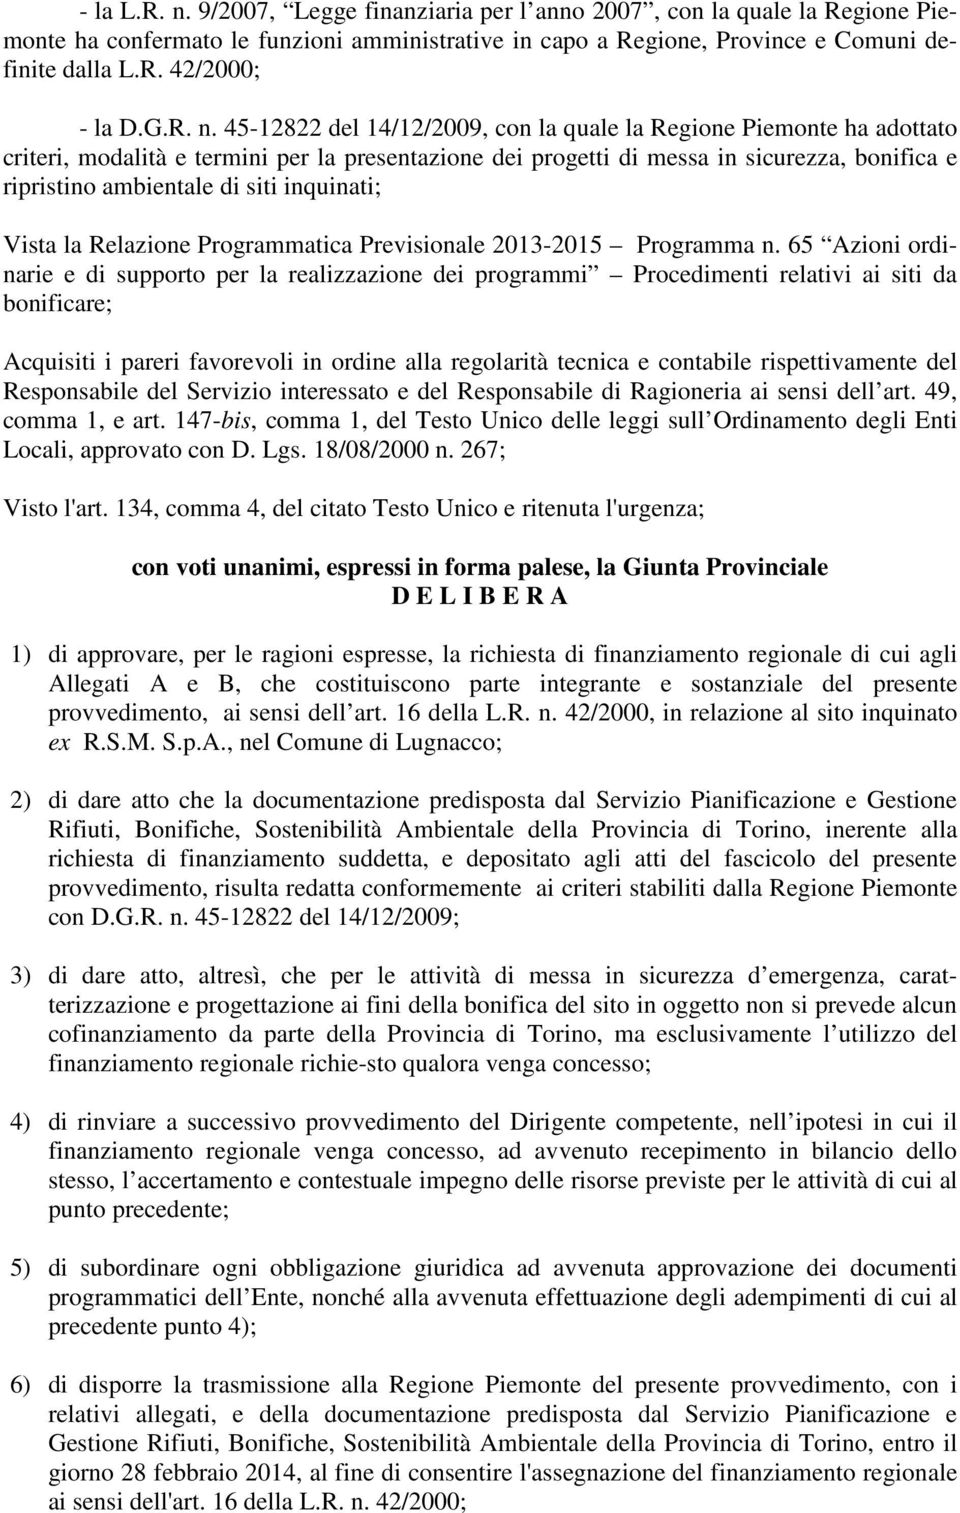 45-12822 del 14/12/2009, con la quale la Regione Piemonte ha adottato criteri, modalità e termini per la presentazione dei progetti di messa in sicurezza, bonifica e ripristino ambientale di siti